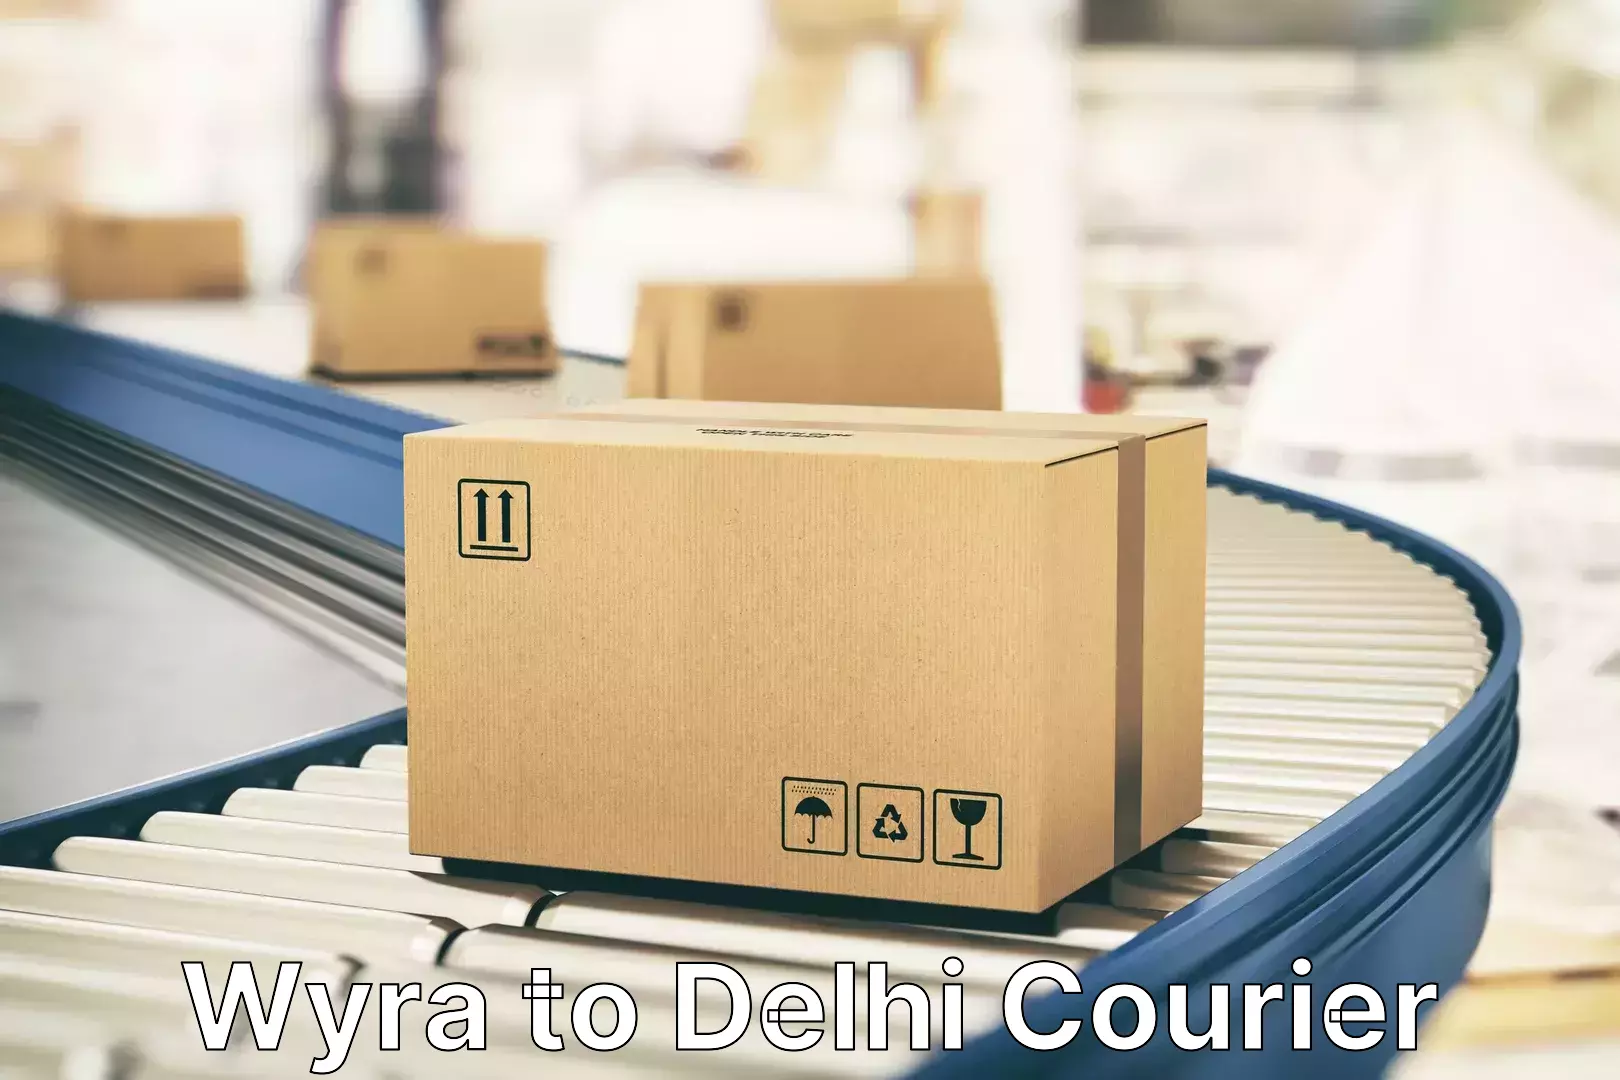 Door-to-door baggage service Wyra to University of Delhi